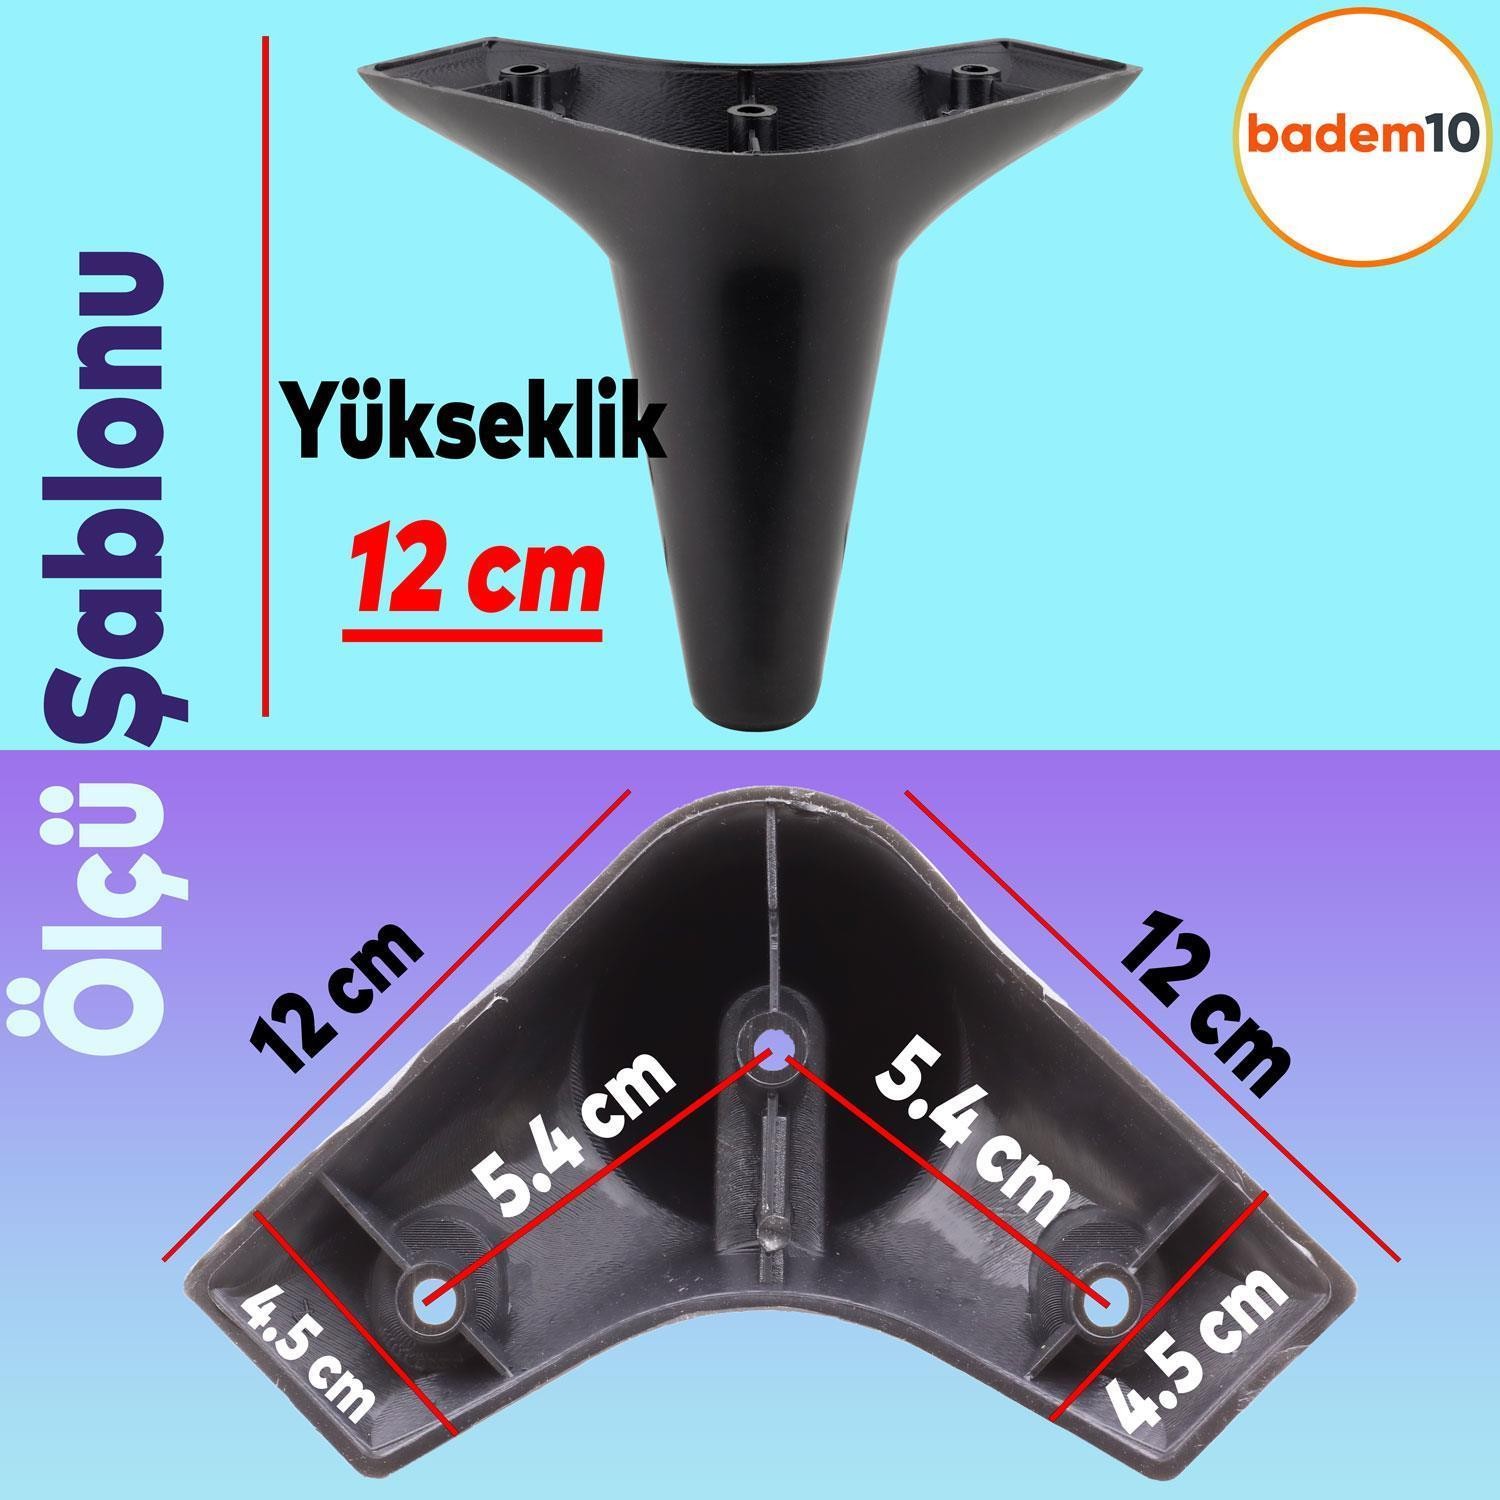 Aspen 6'lı Set Mobilya TV Ünitesi Çekyat Koltuk Kanepe Destek Ayağı 12 cm Siyah Baza Ayak M8 Destek